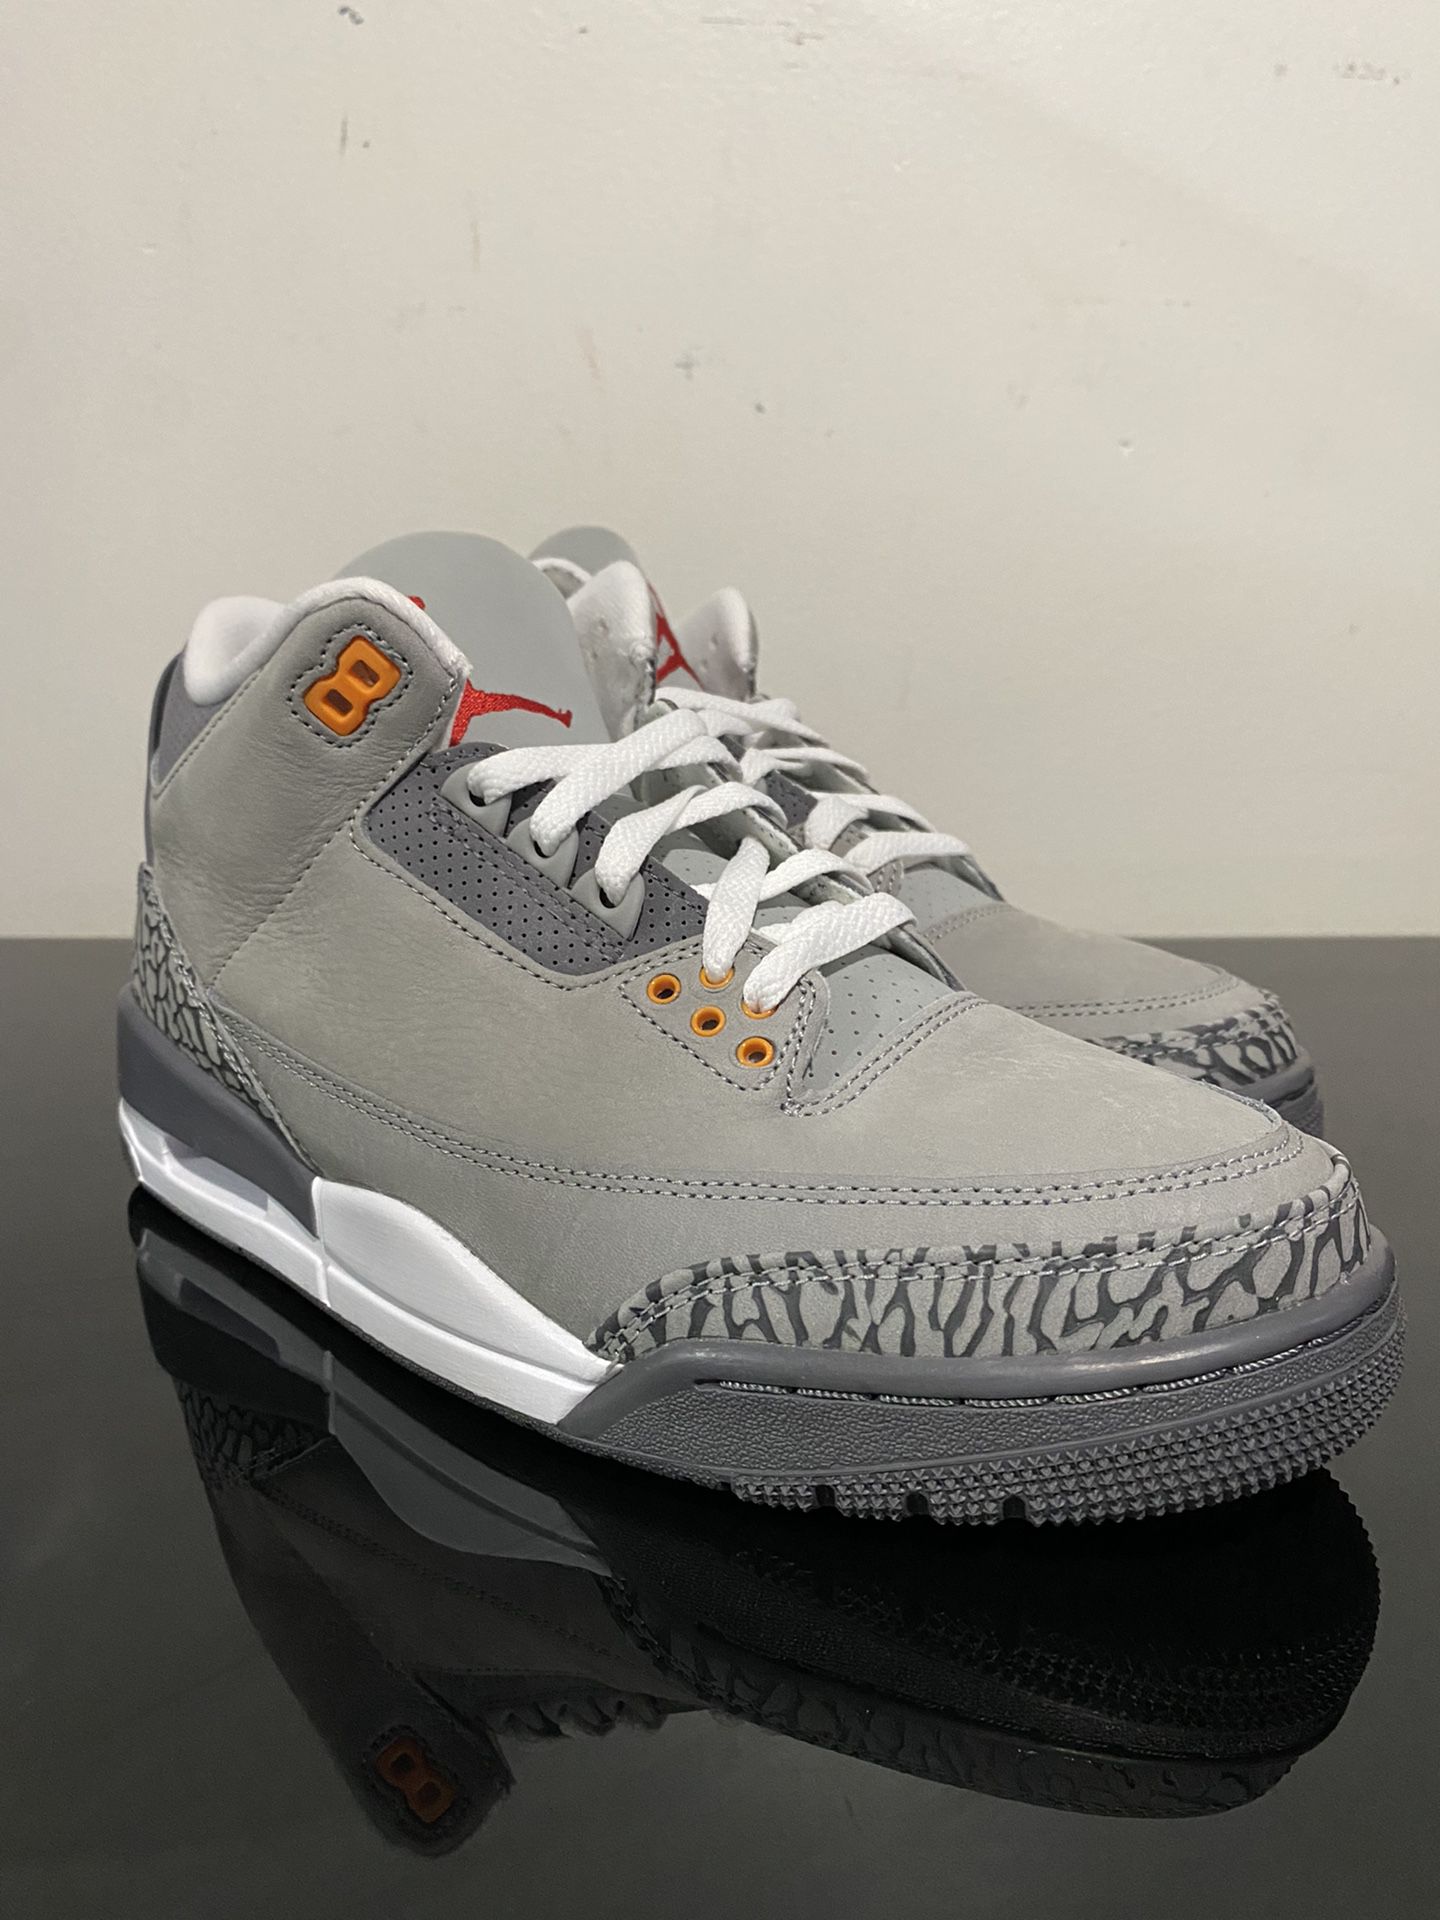 Nike Air Jordan 3 Retro Cool Grey 2021 Size 8.5 Men’s CT8532-012 Deadstock 